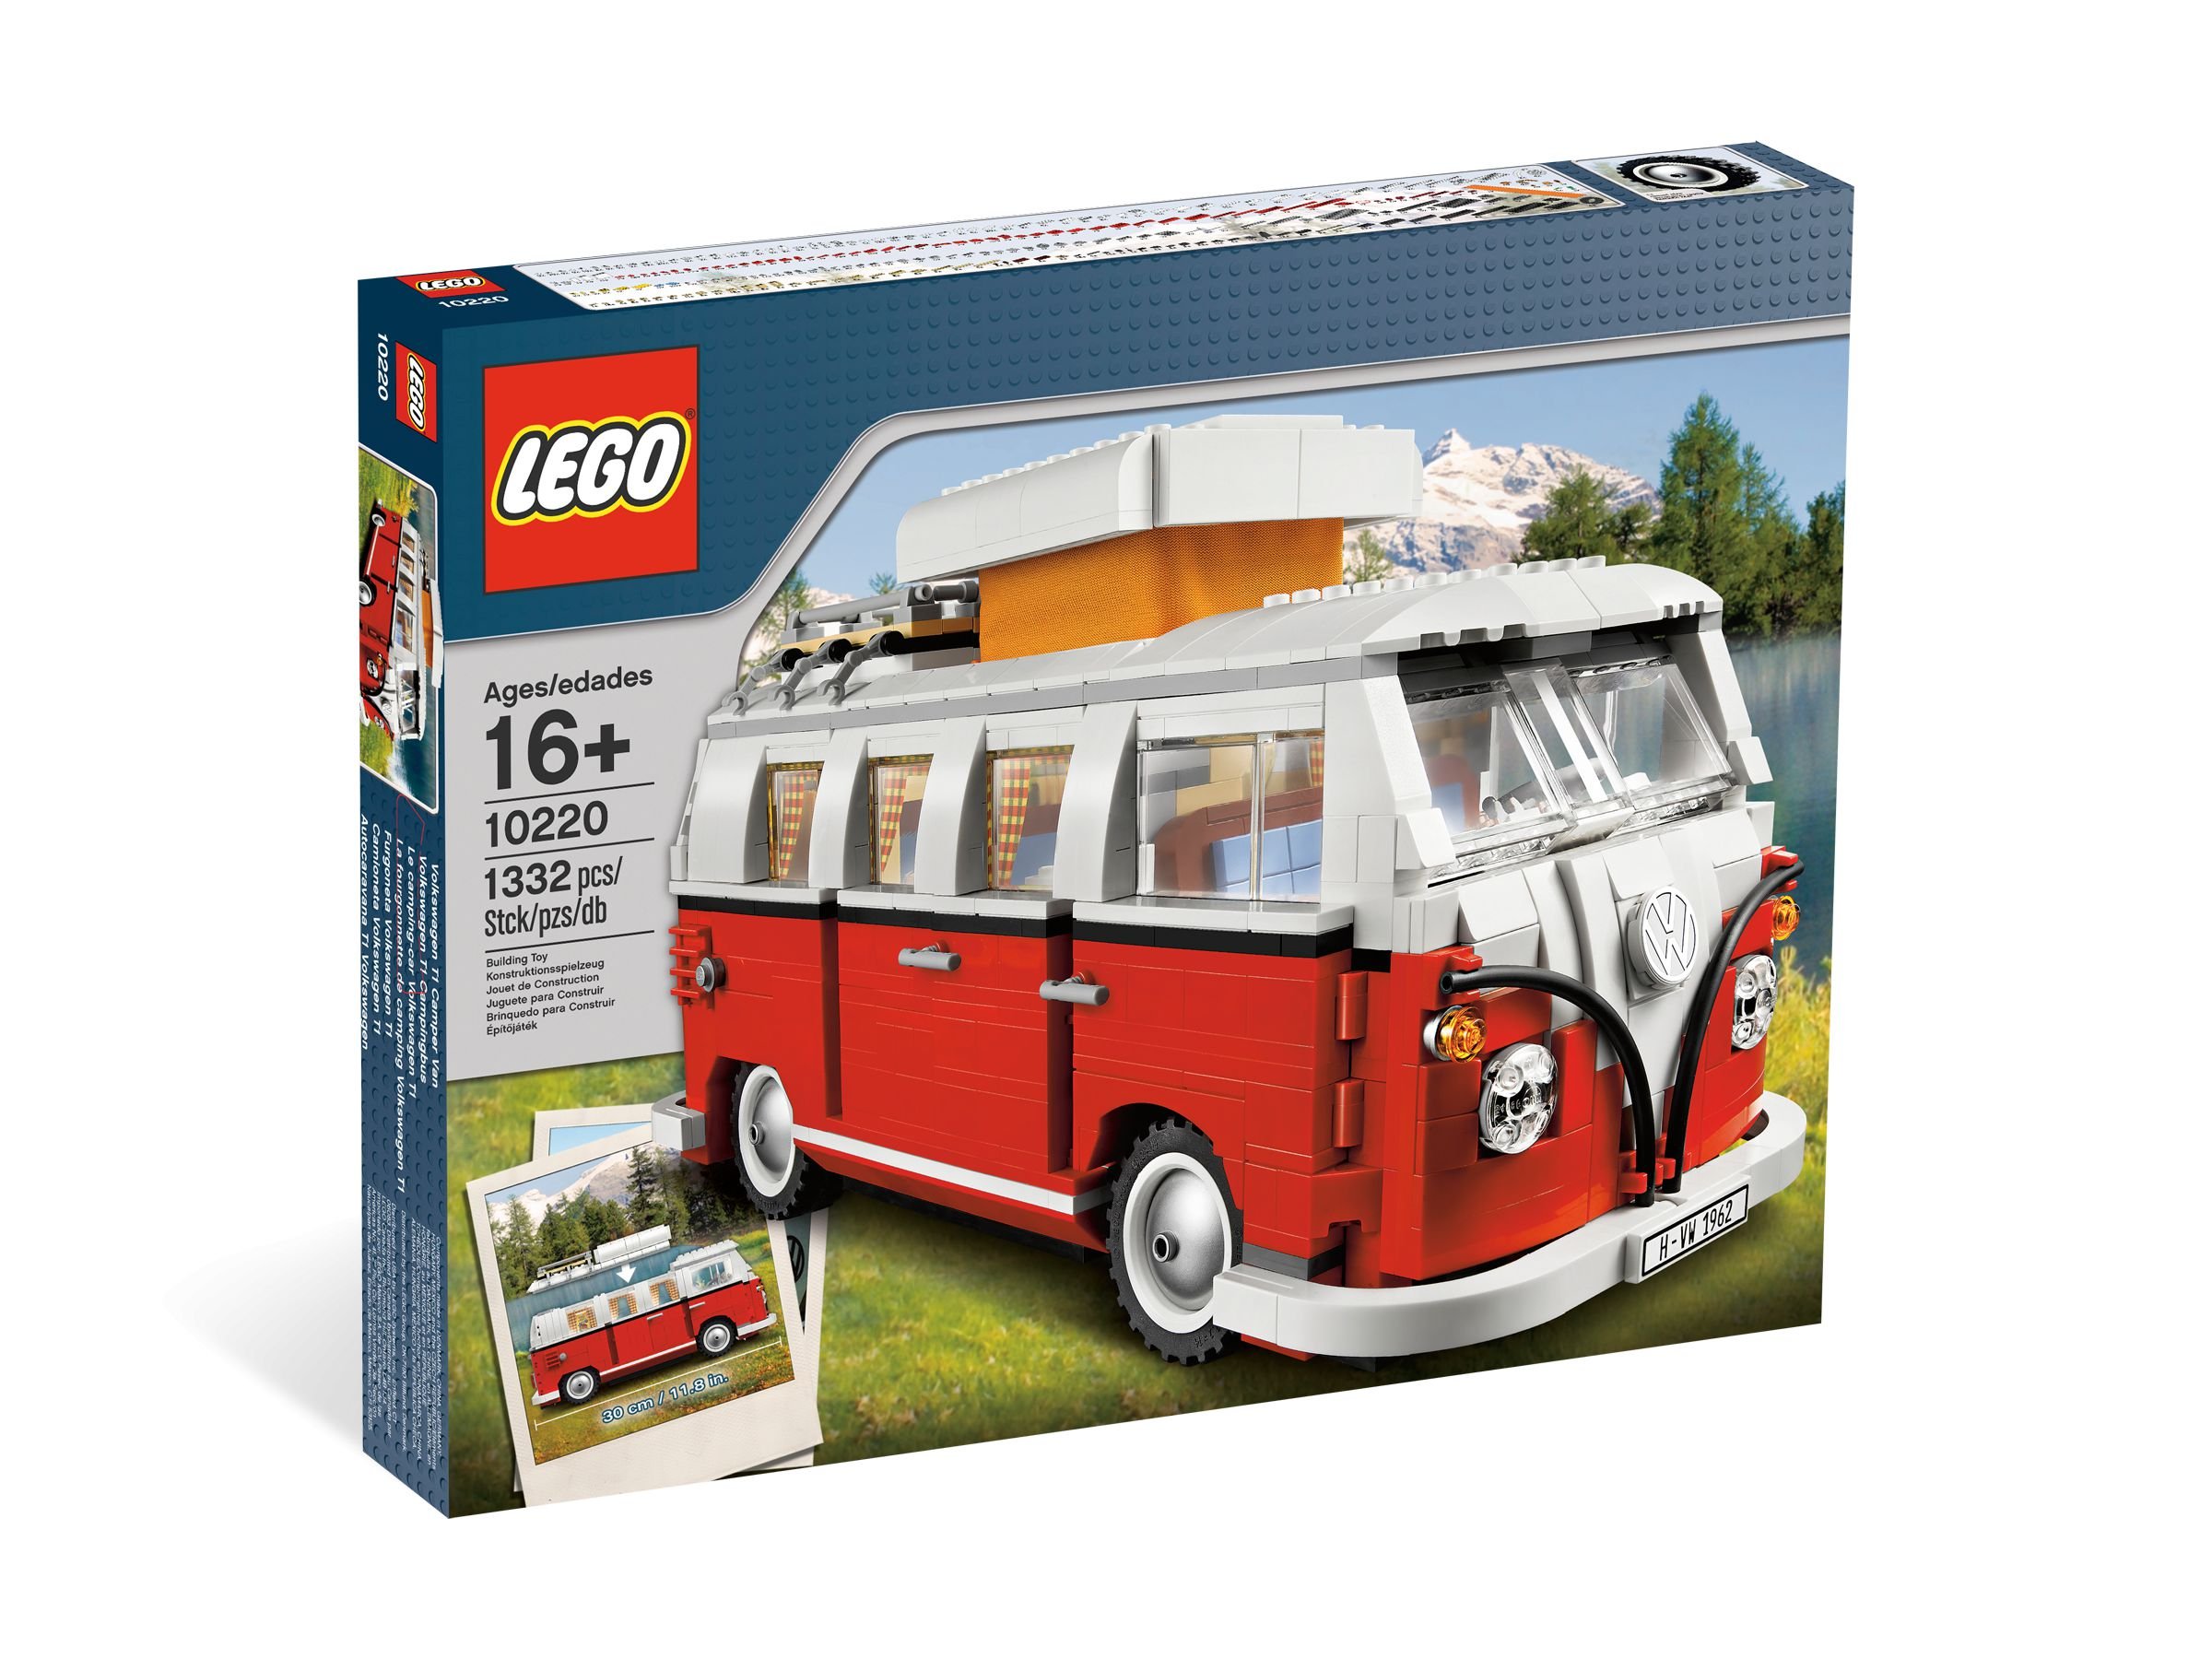 LEGO Advanced Models 10220 Volkswagen T1 Campingbus LEGO_10220_alt1.jpg